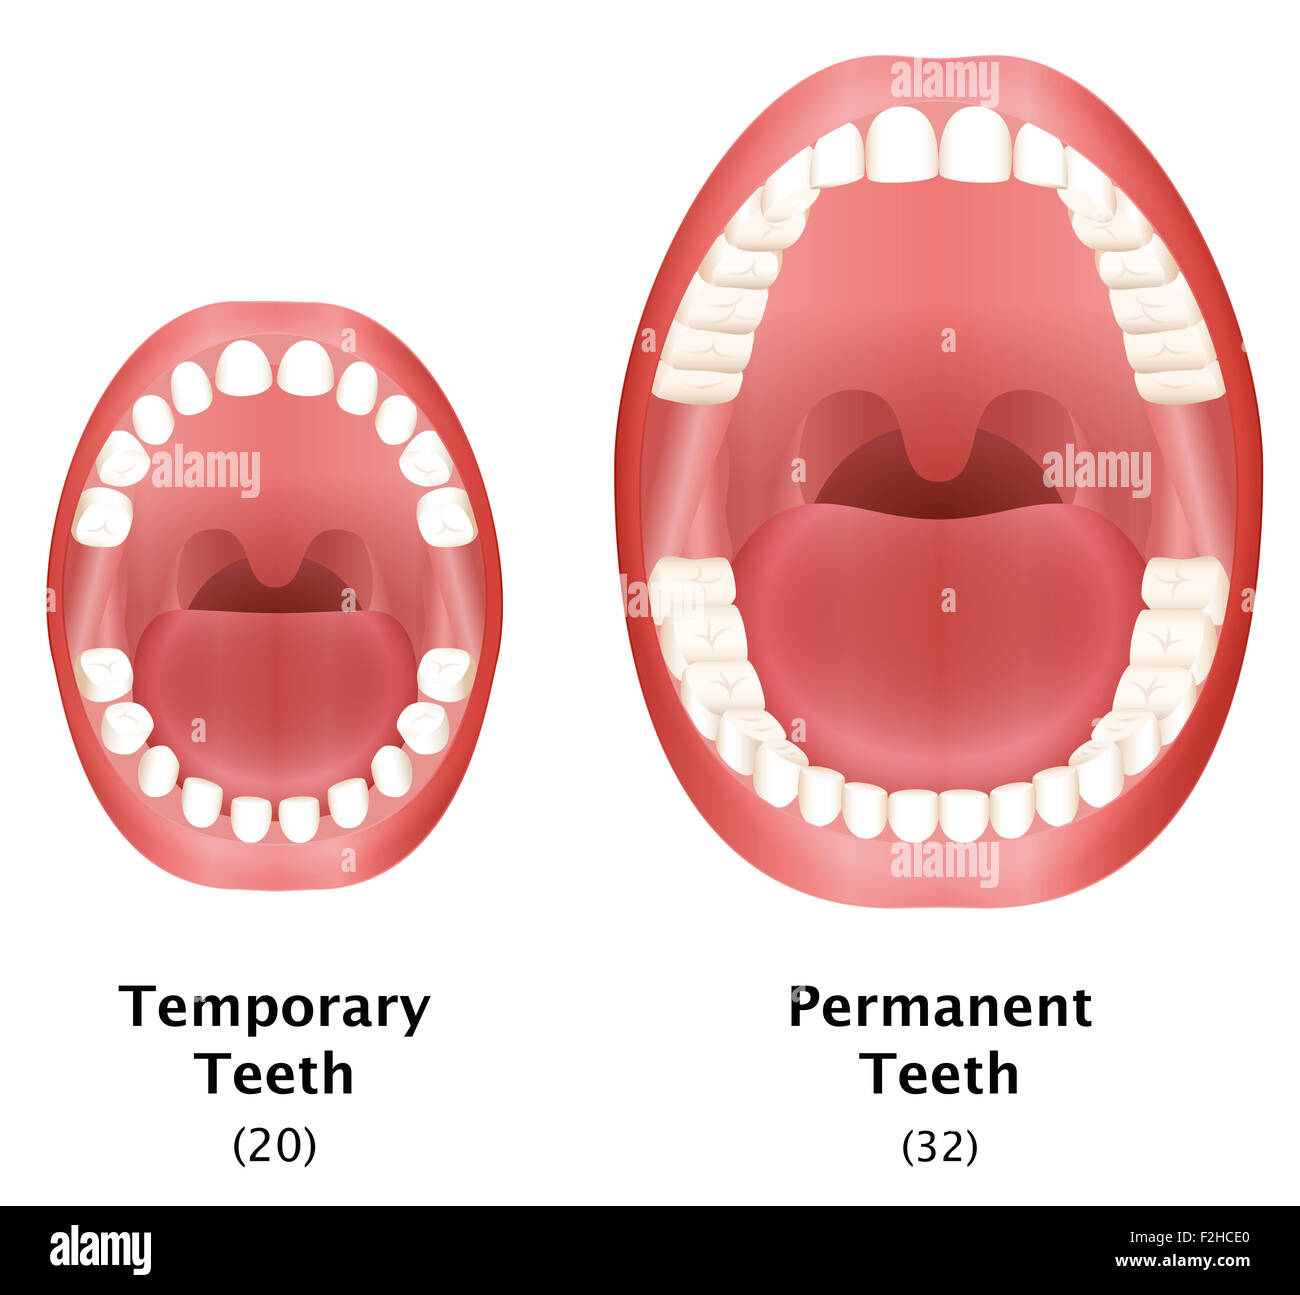 Vergleich der temporären Zähne eines Kindes und bleibenden Zähnen von einem  Erwachsenen natürlichen Gebiss Stockfotografie - Alamy